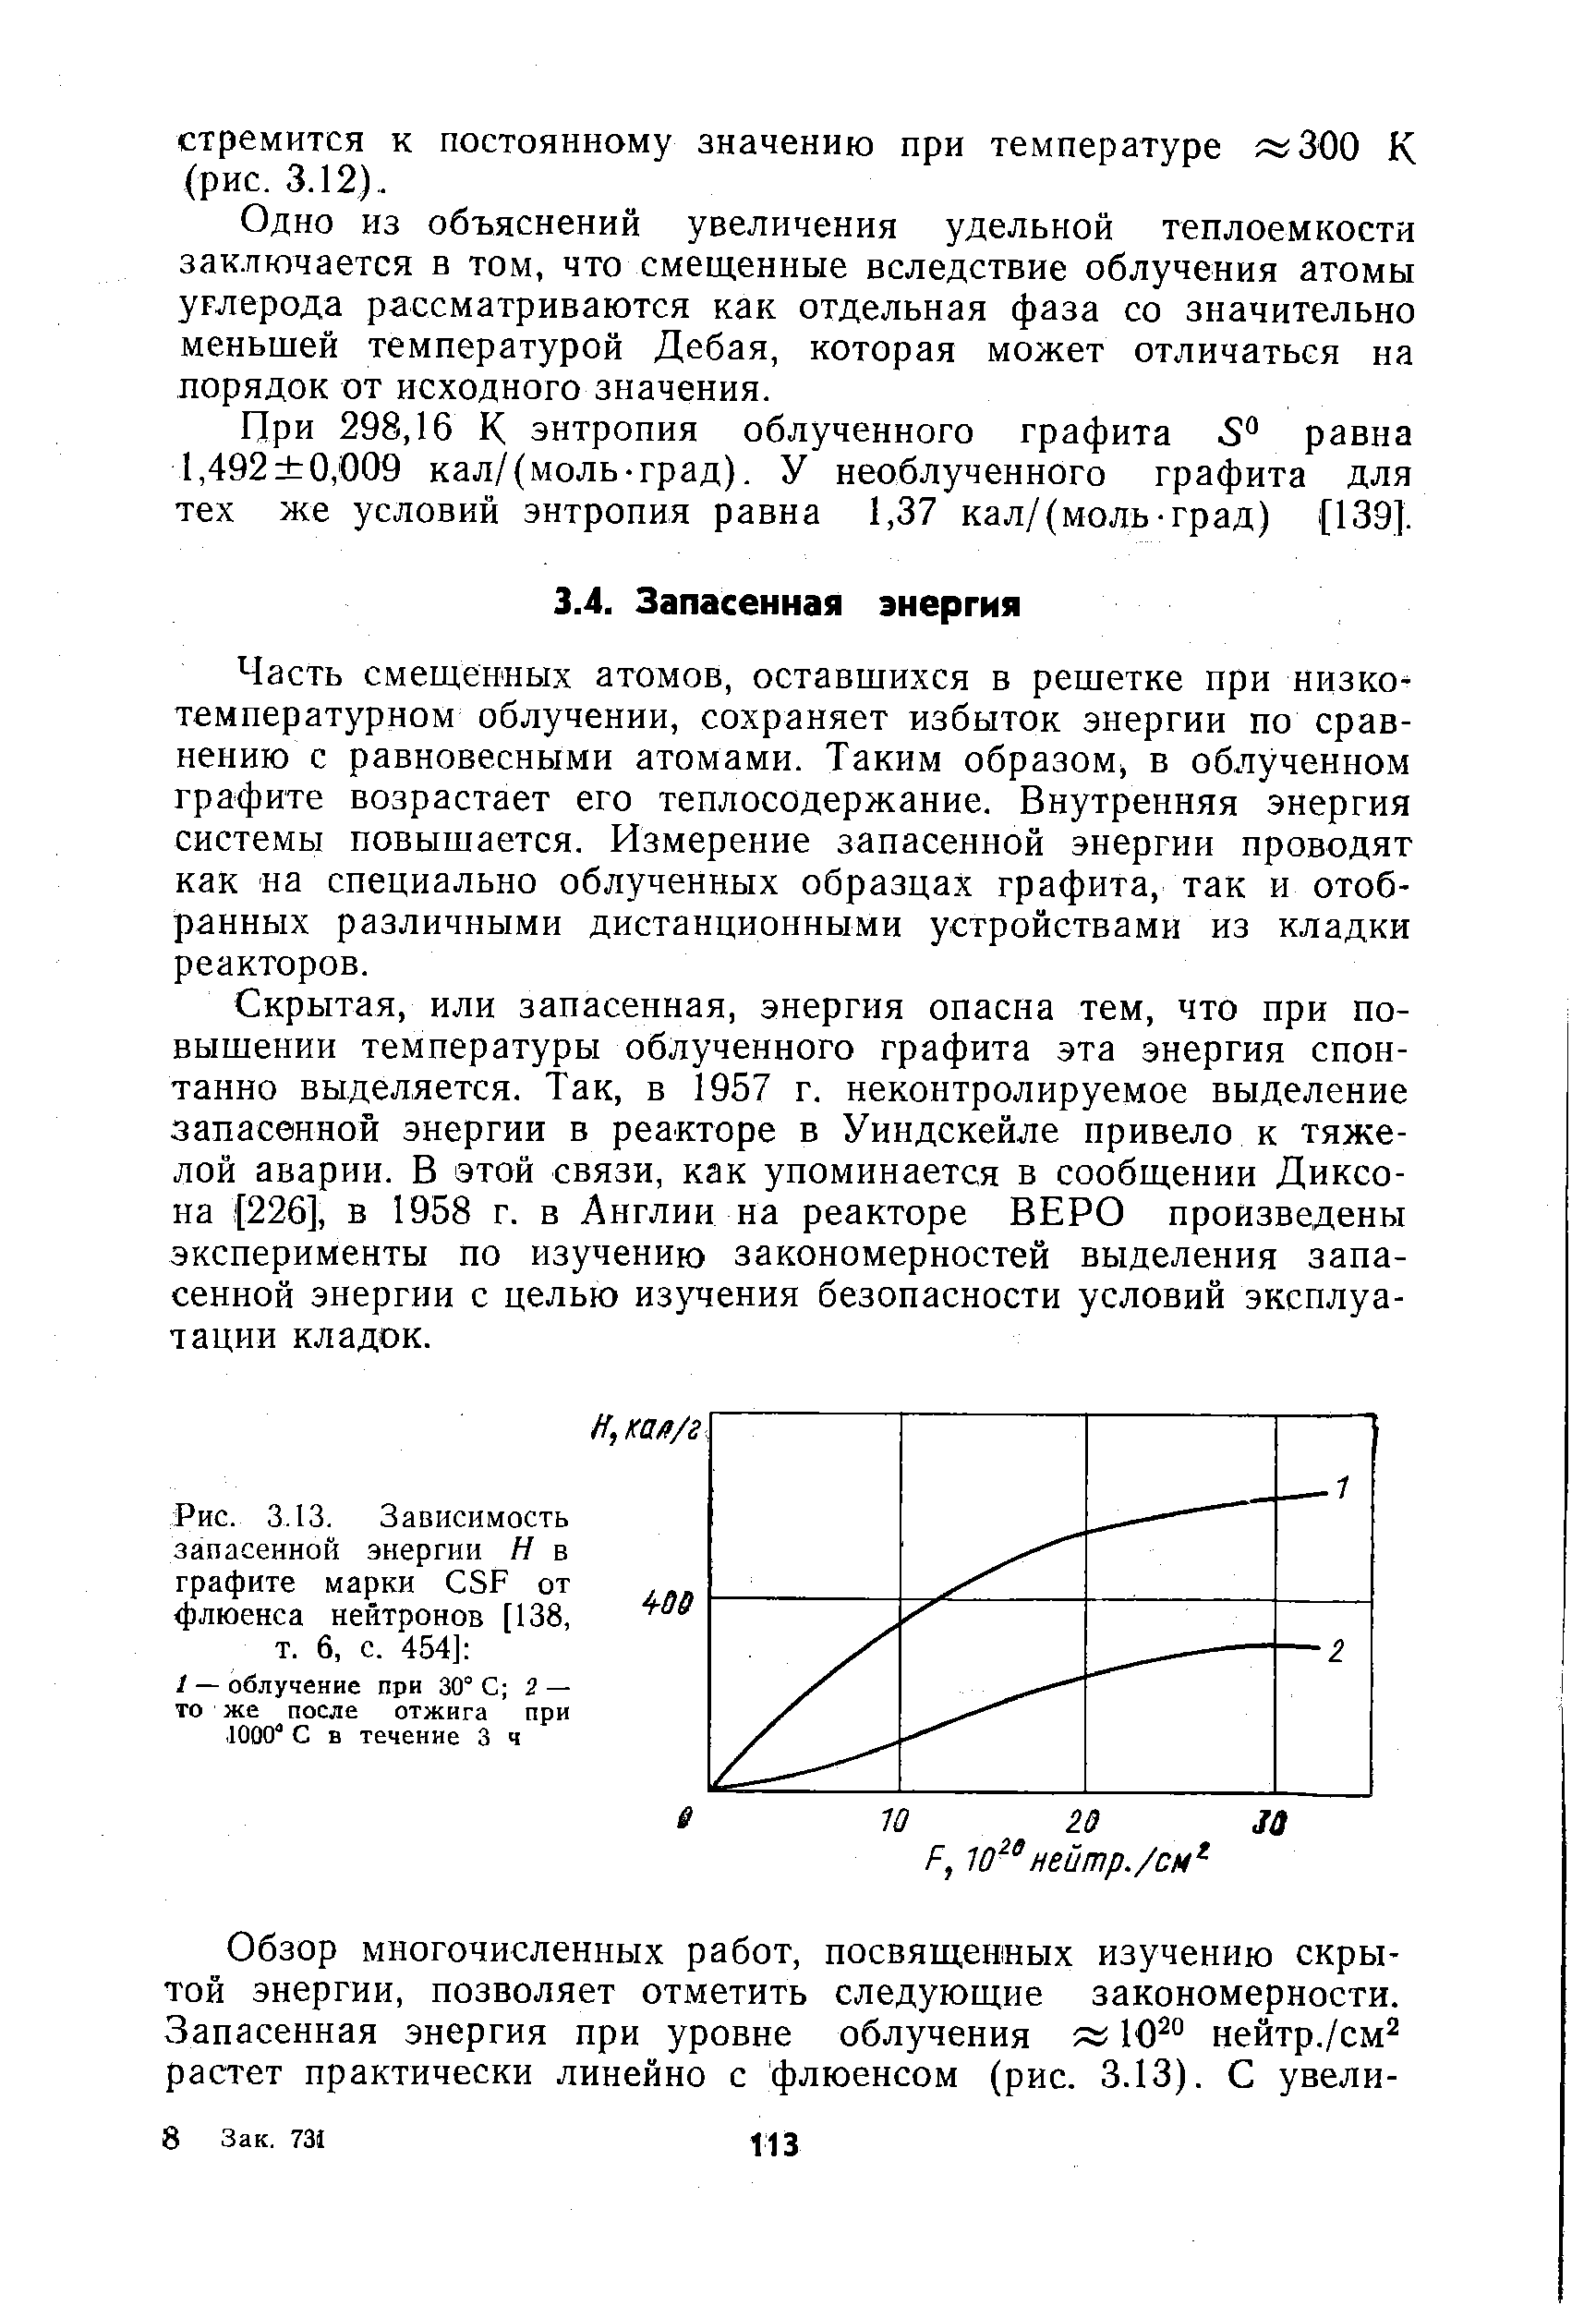 Рис. 3.13. Зависимость запасенной энергии Н в графите марки SF от флюенса нейтронов [138, т. 6, с. 454] 
